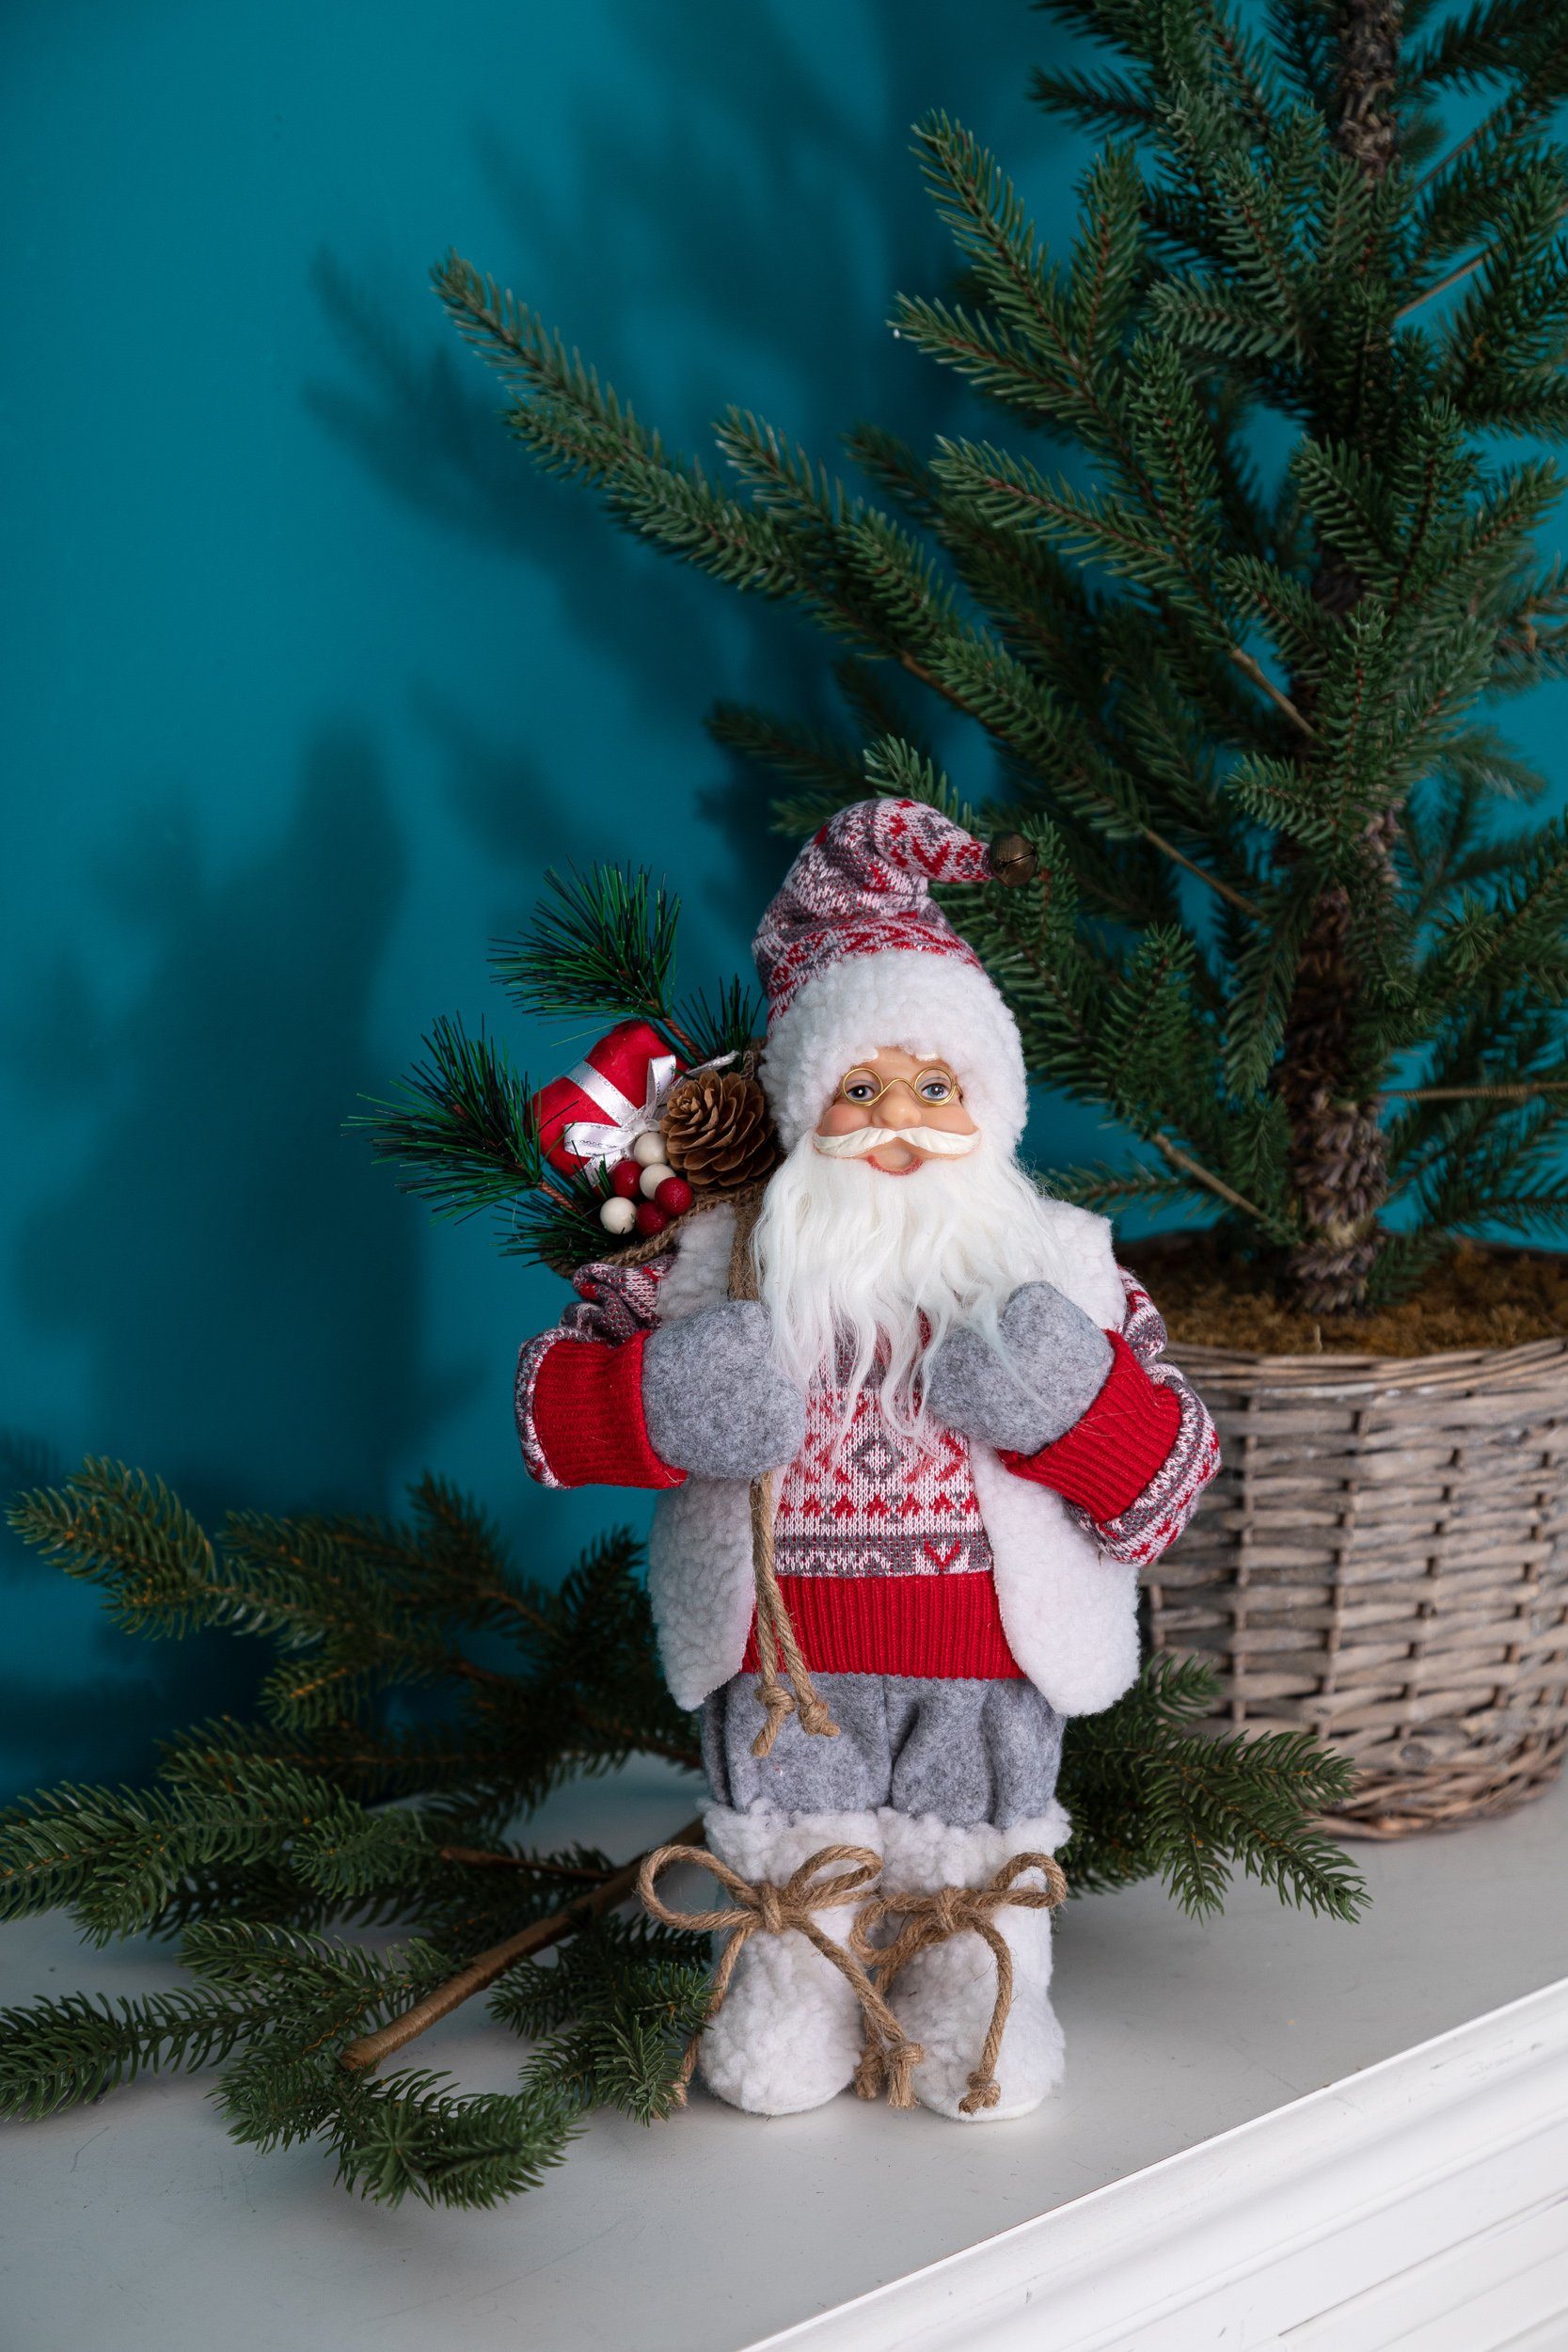 Wohnando Dekofigur Weihnachtsmann Rot-Grau, Santa Weihnachtsdekoration Claus, stehend